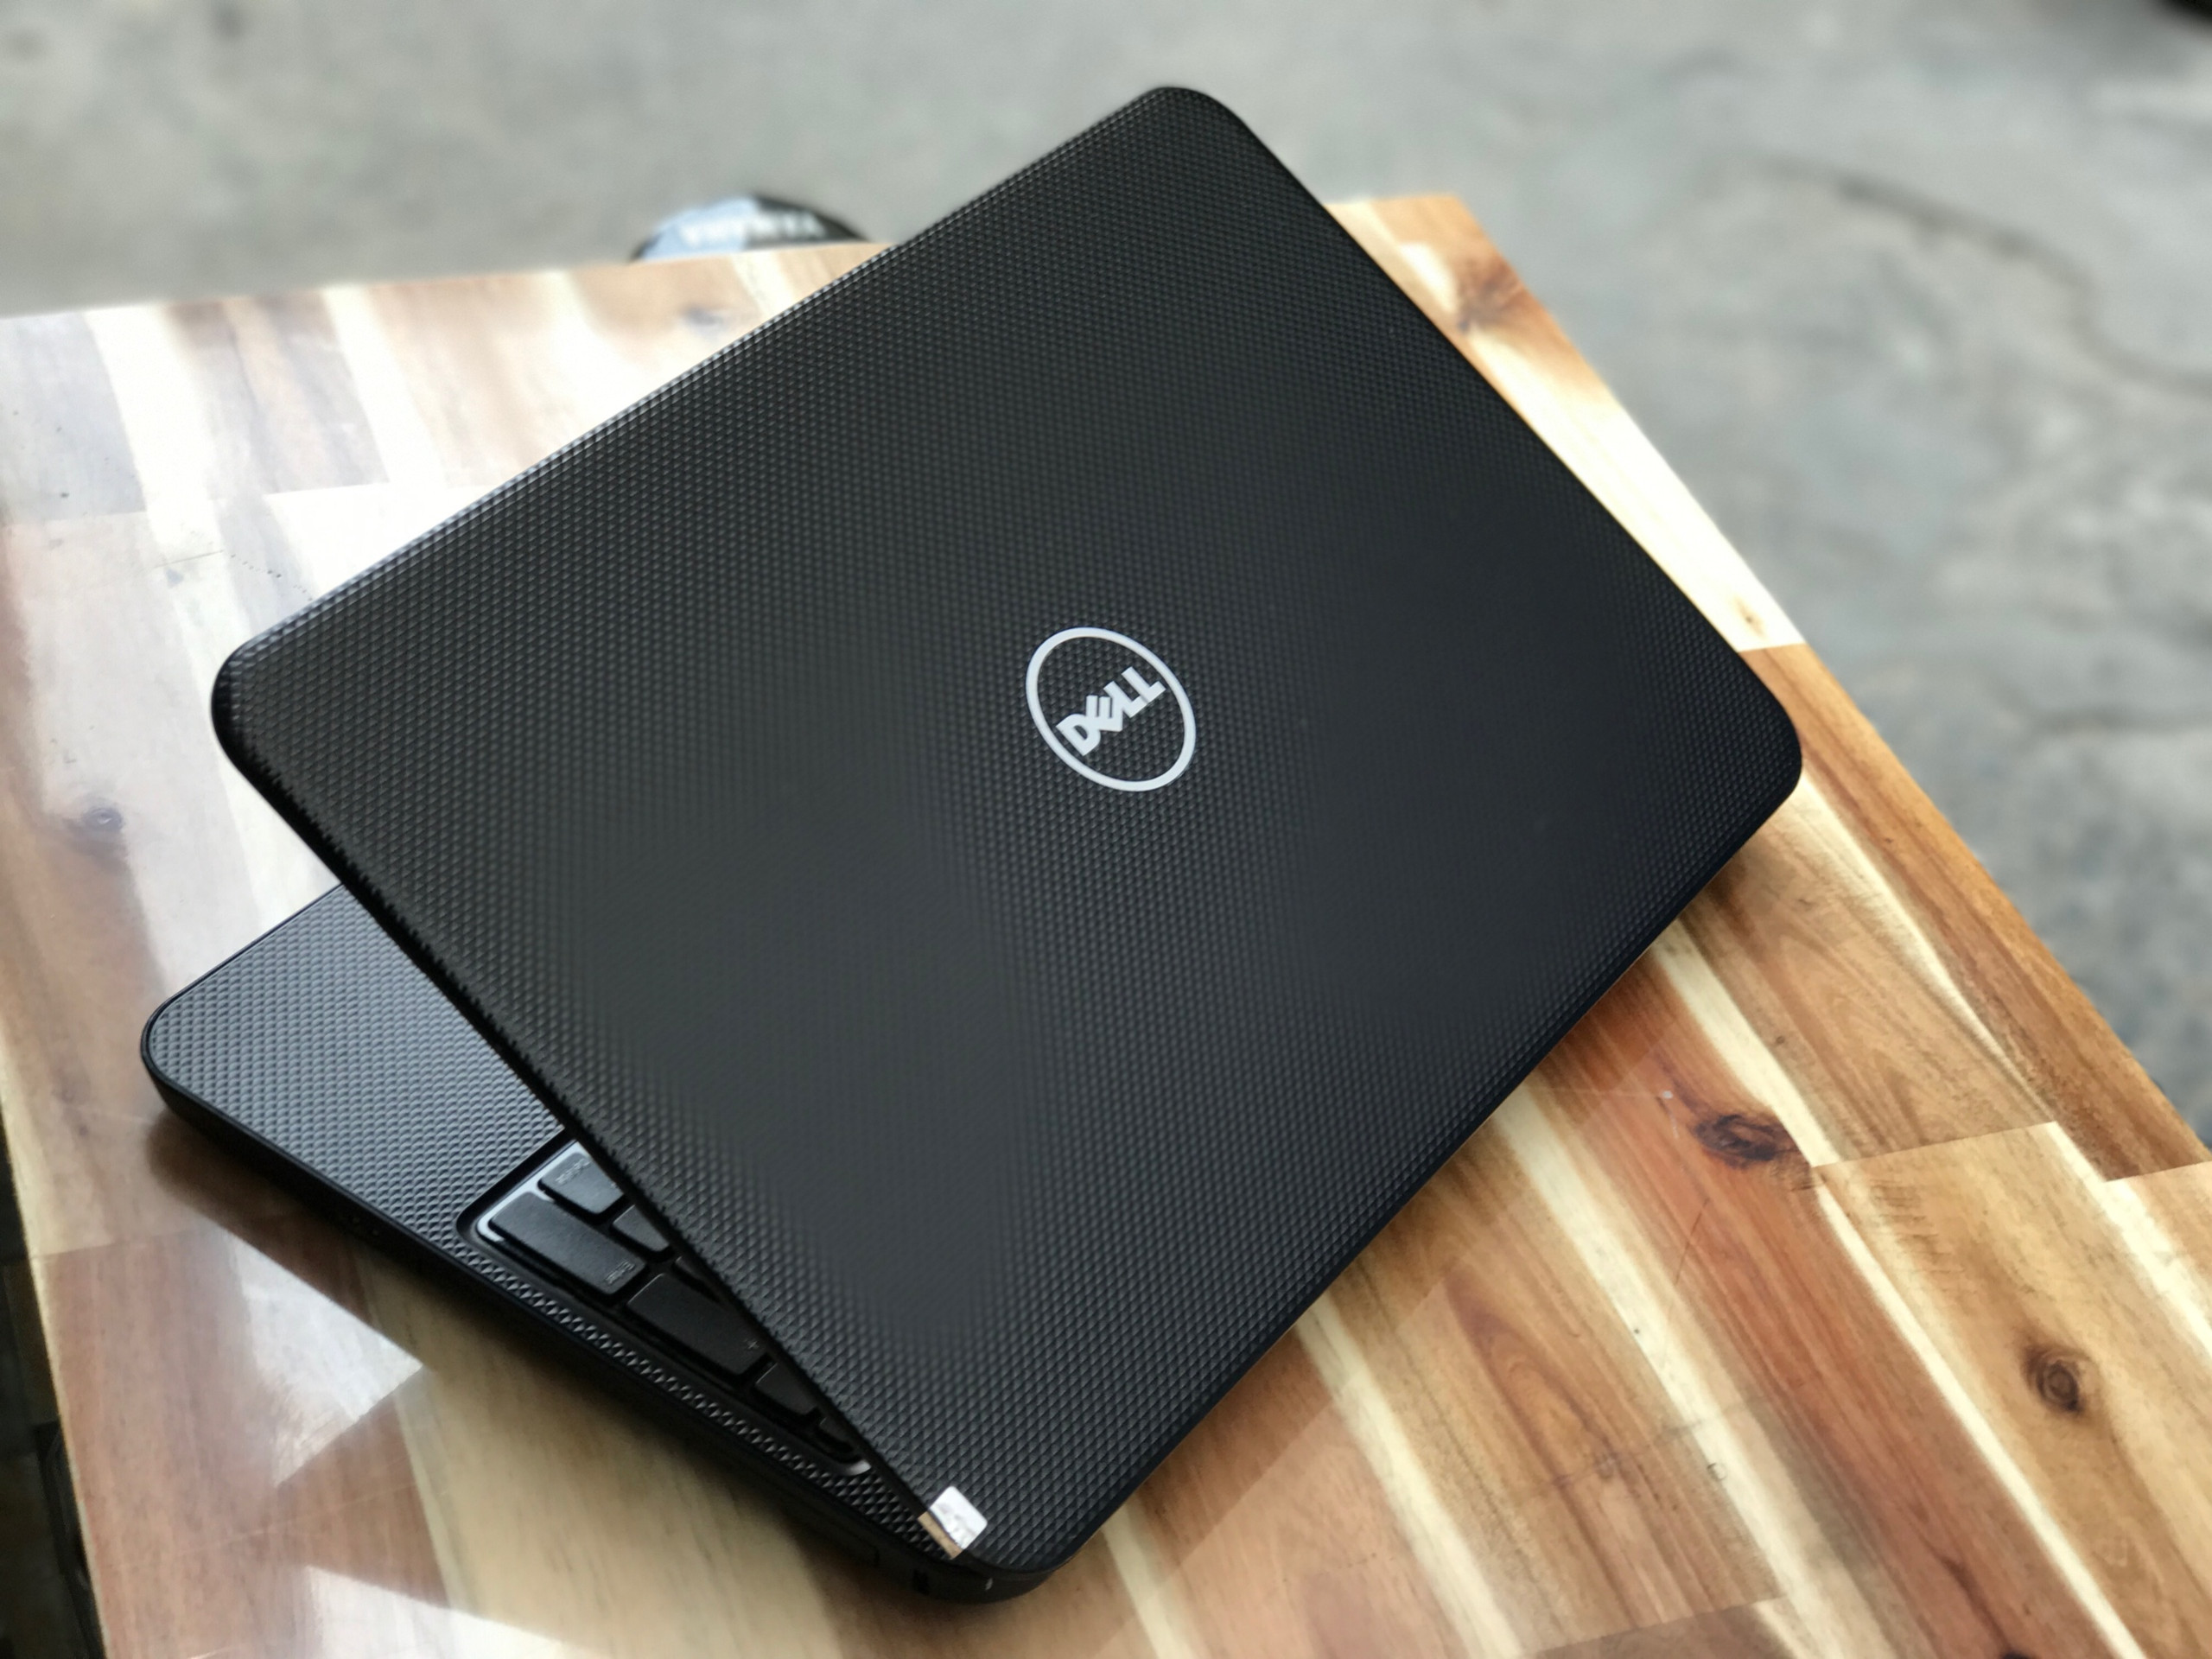 Laptop Dell Inspiron 3421, I3 3217U 4G 500G 14inch Đẹp zin 100% Giá rẻ